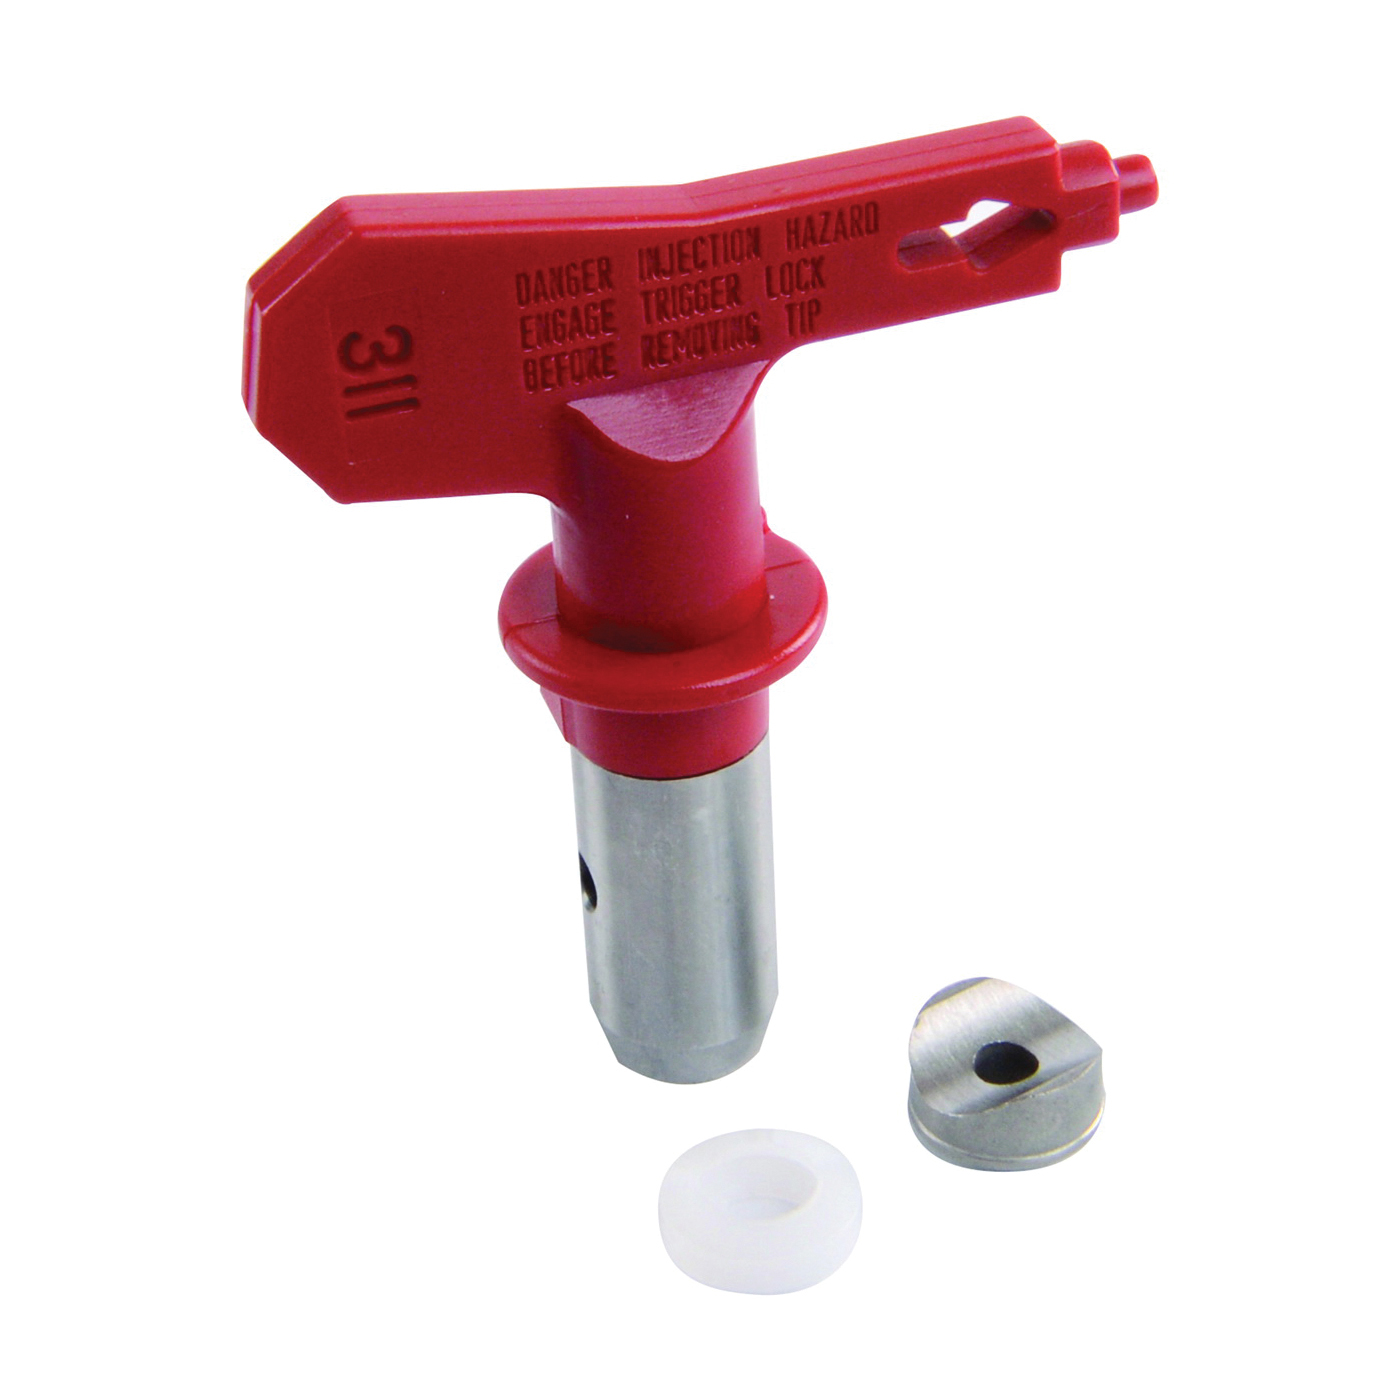 662-311 Paint Sprayer Tip, 0.011 in Tip, Tungsten Carbide